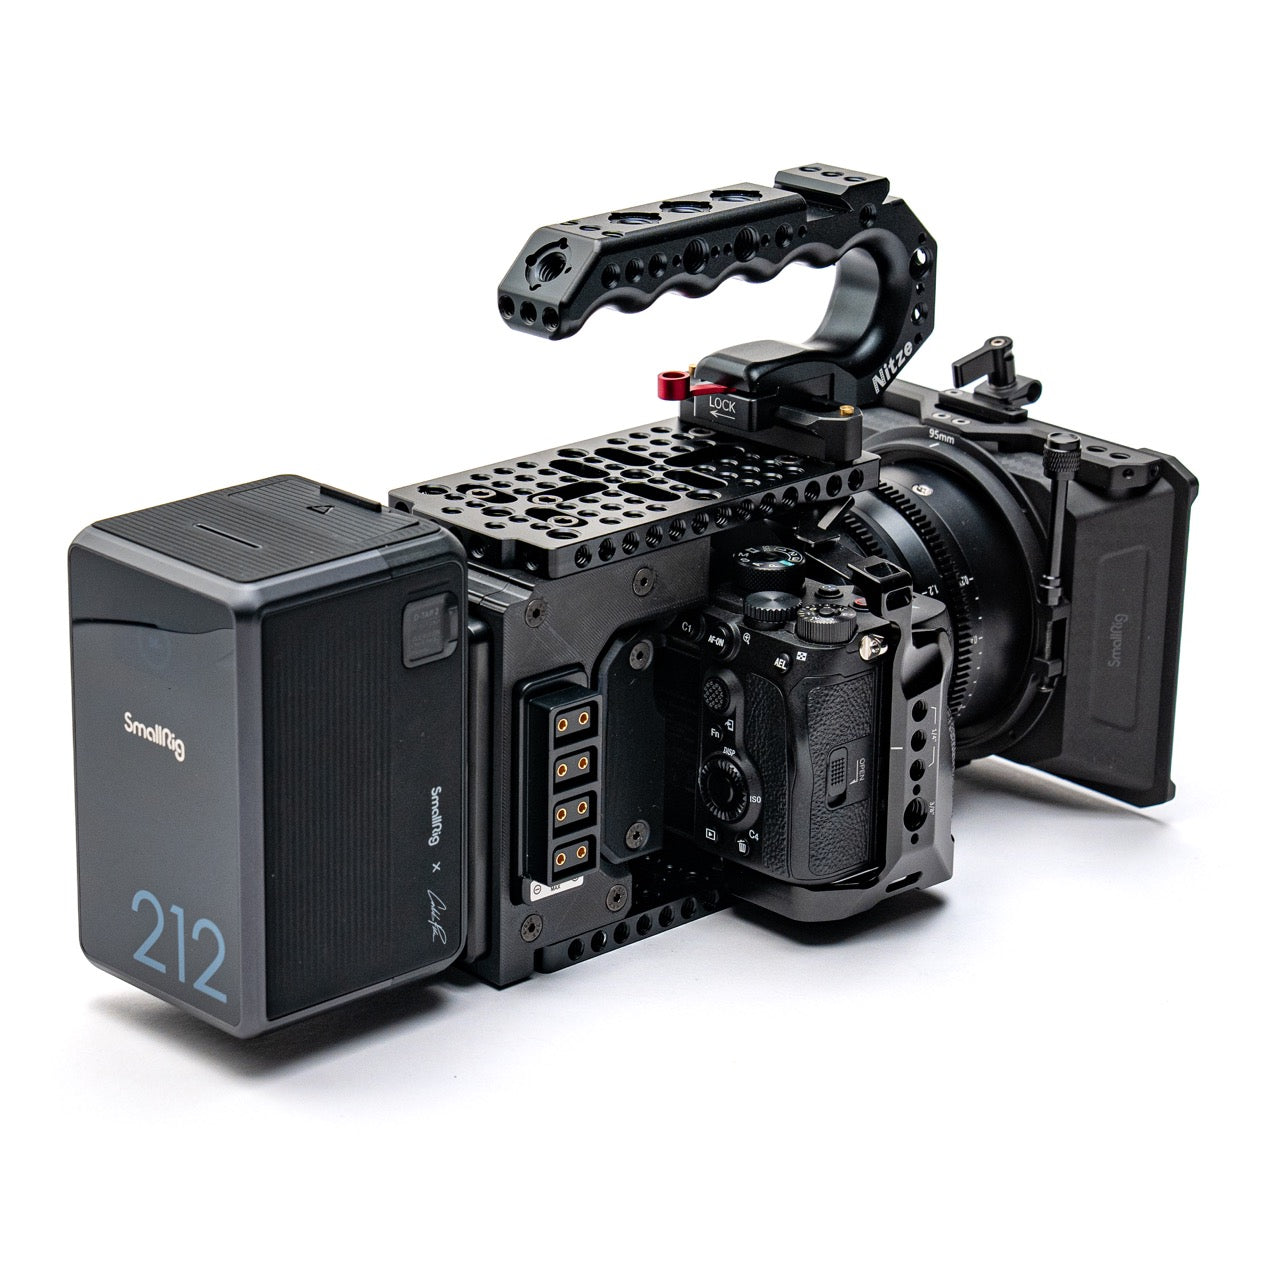 CineBack for A7 Series Cameras